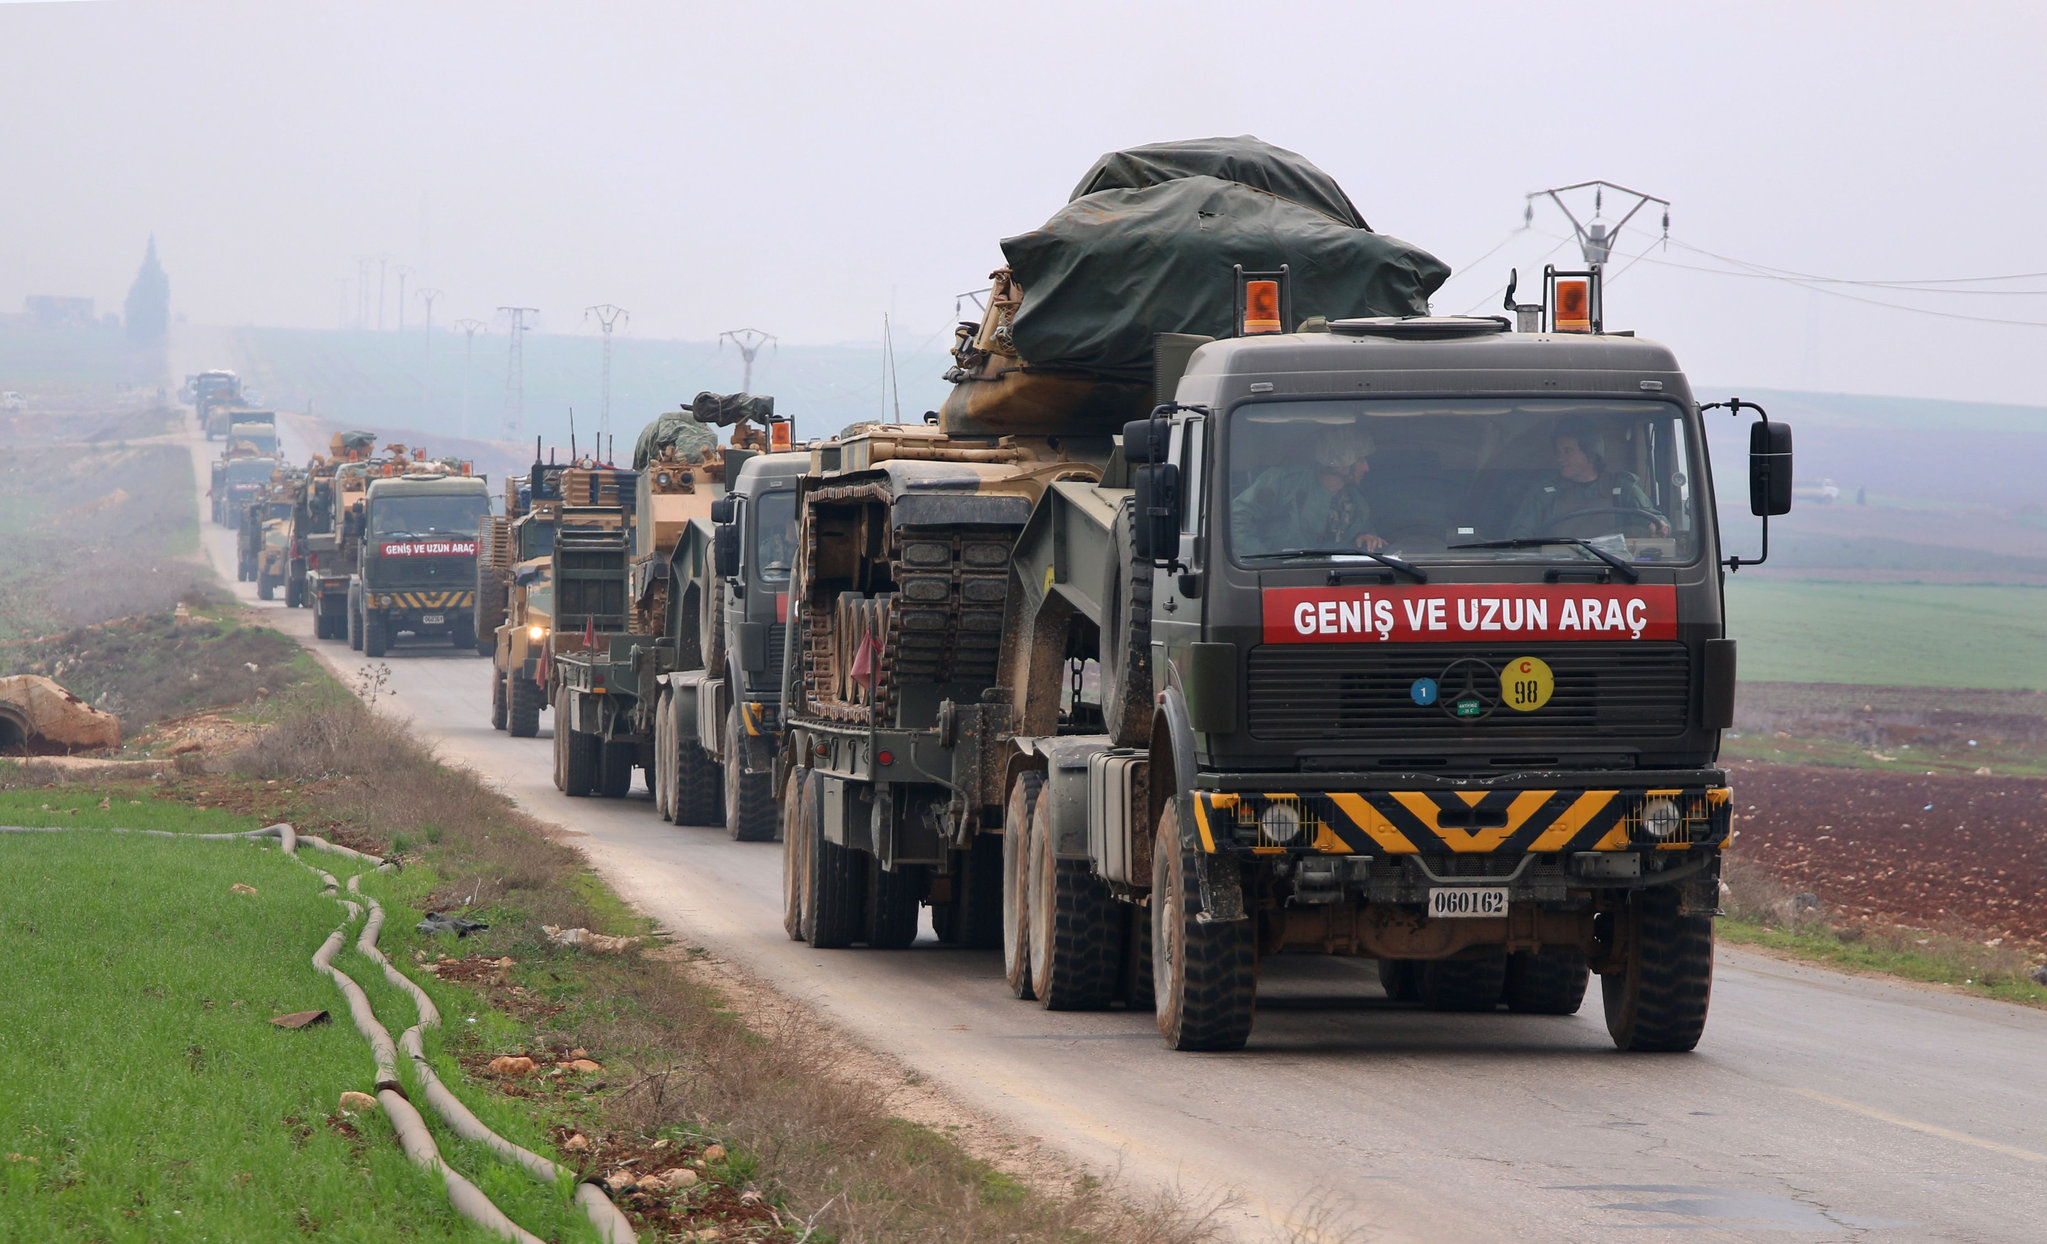 الجيش التركي ينشئ نقطة مراقبة جديدة في سراقب بريف إدلب